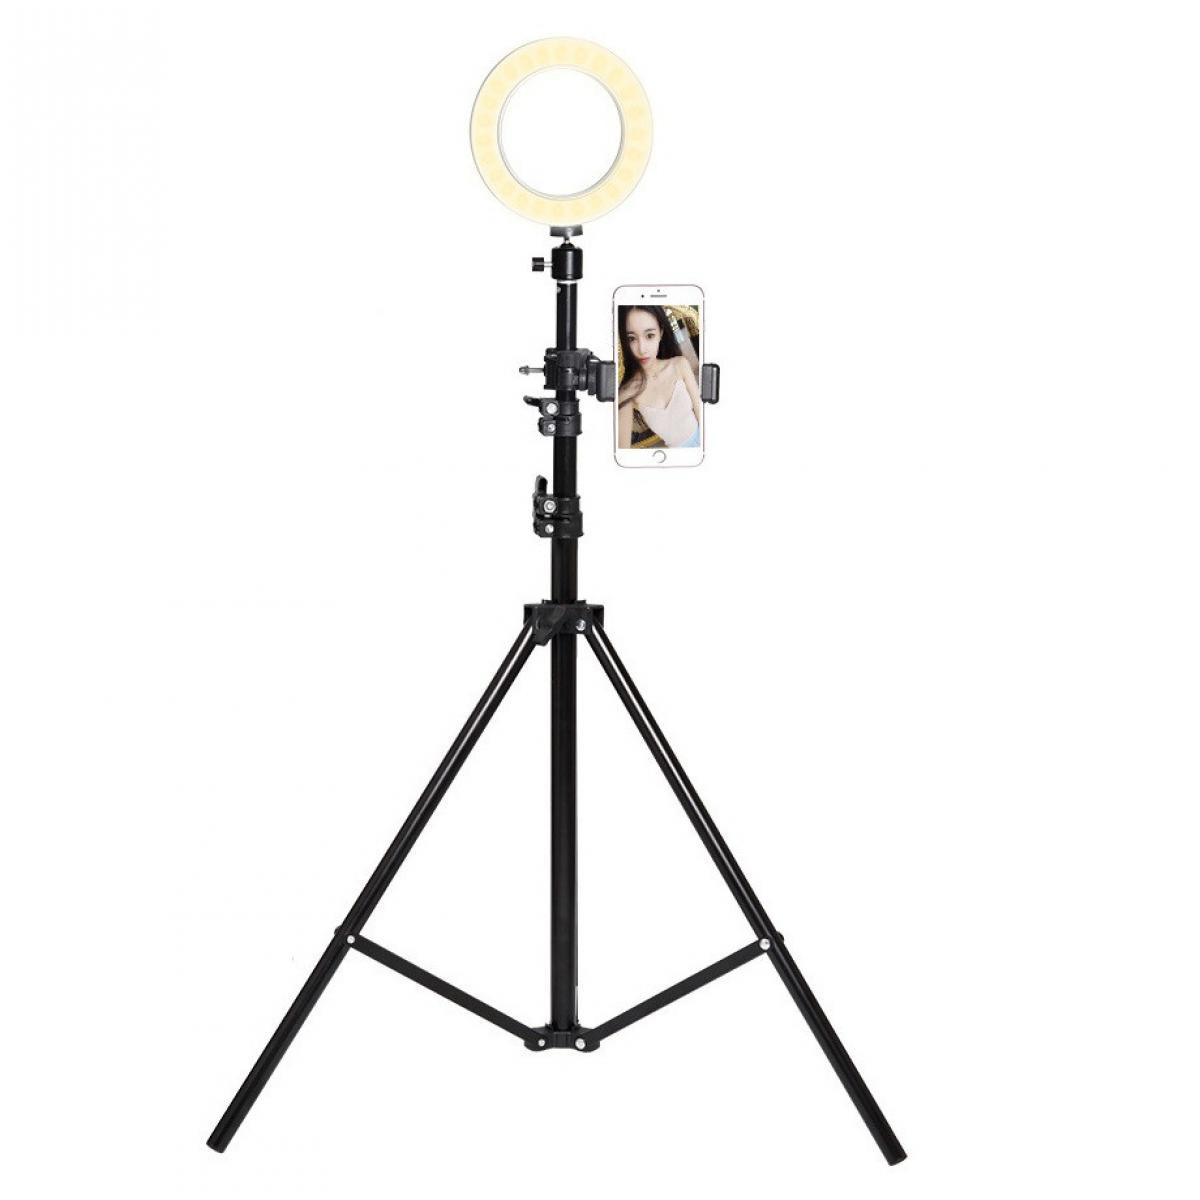 Shot - Trepied Telescopique avec Flash pour OPPO Reno Z Smartphone Reglable Photo (NOIR) - Autres accessoires smartphone